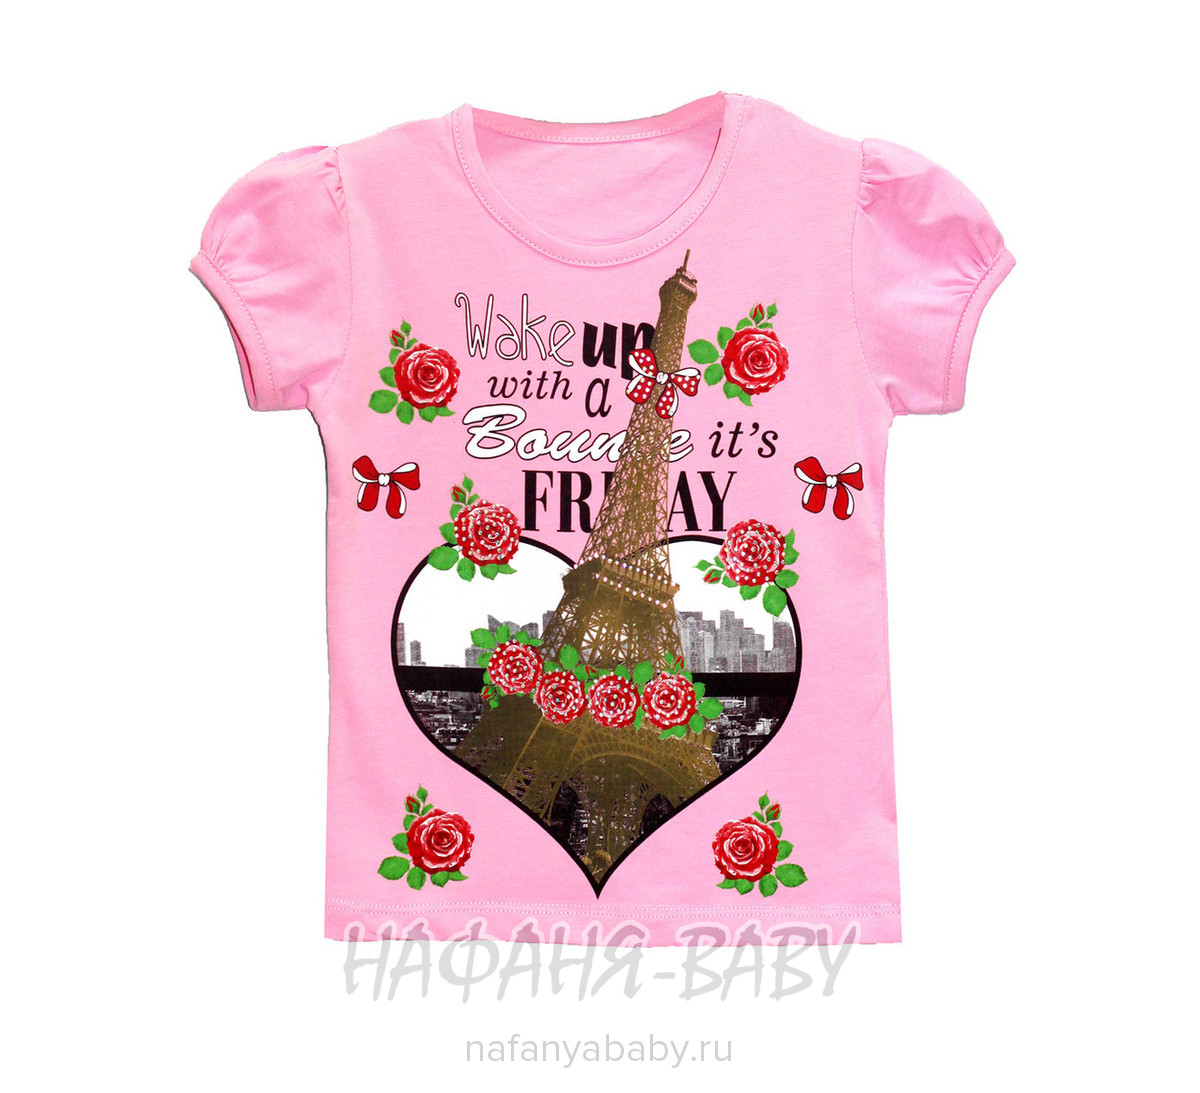 Детская футболка UNRULY, купить в интернет магазине Нафаня. арт: 2957.